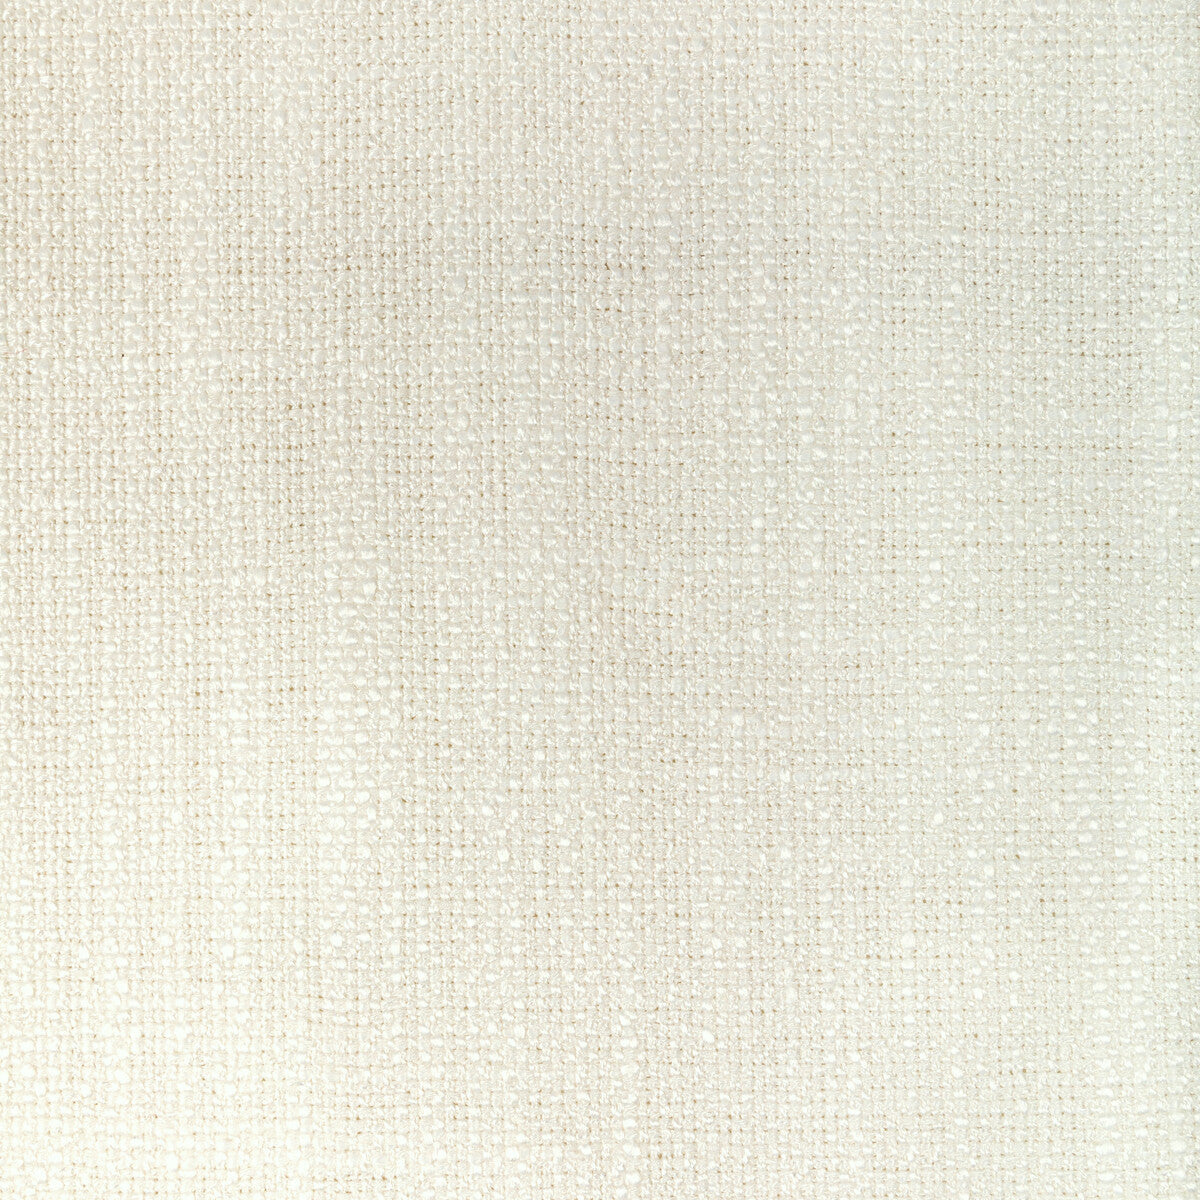 Kravet Basics fabric in 36537-1 color - pattern 36537.1.0 - by Kravet Basics